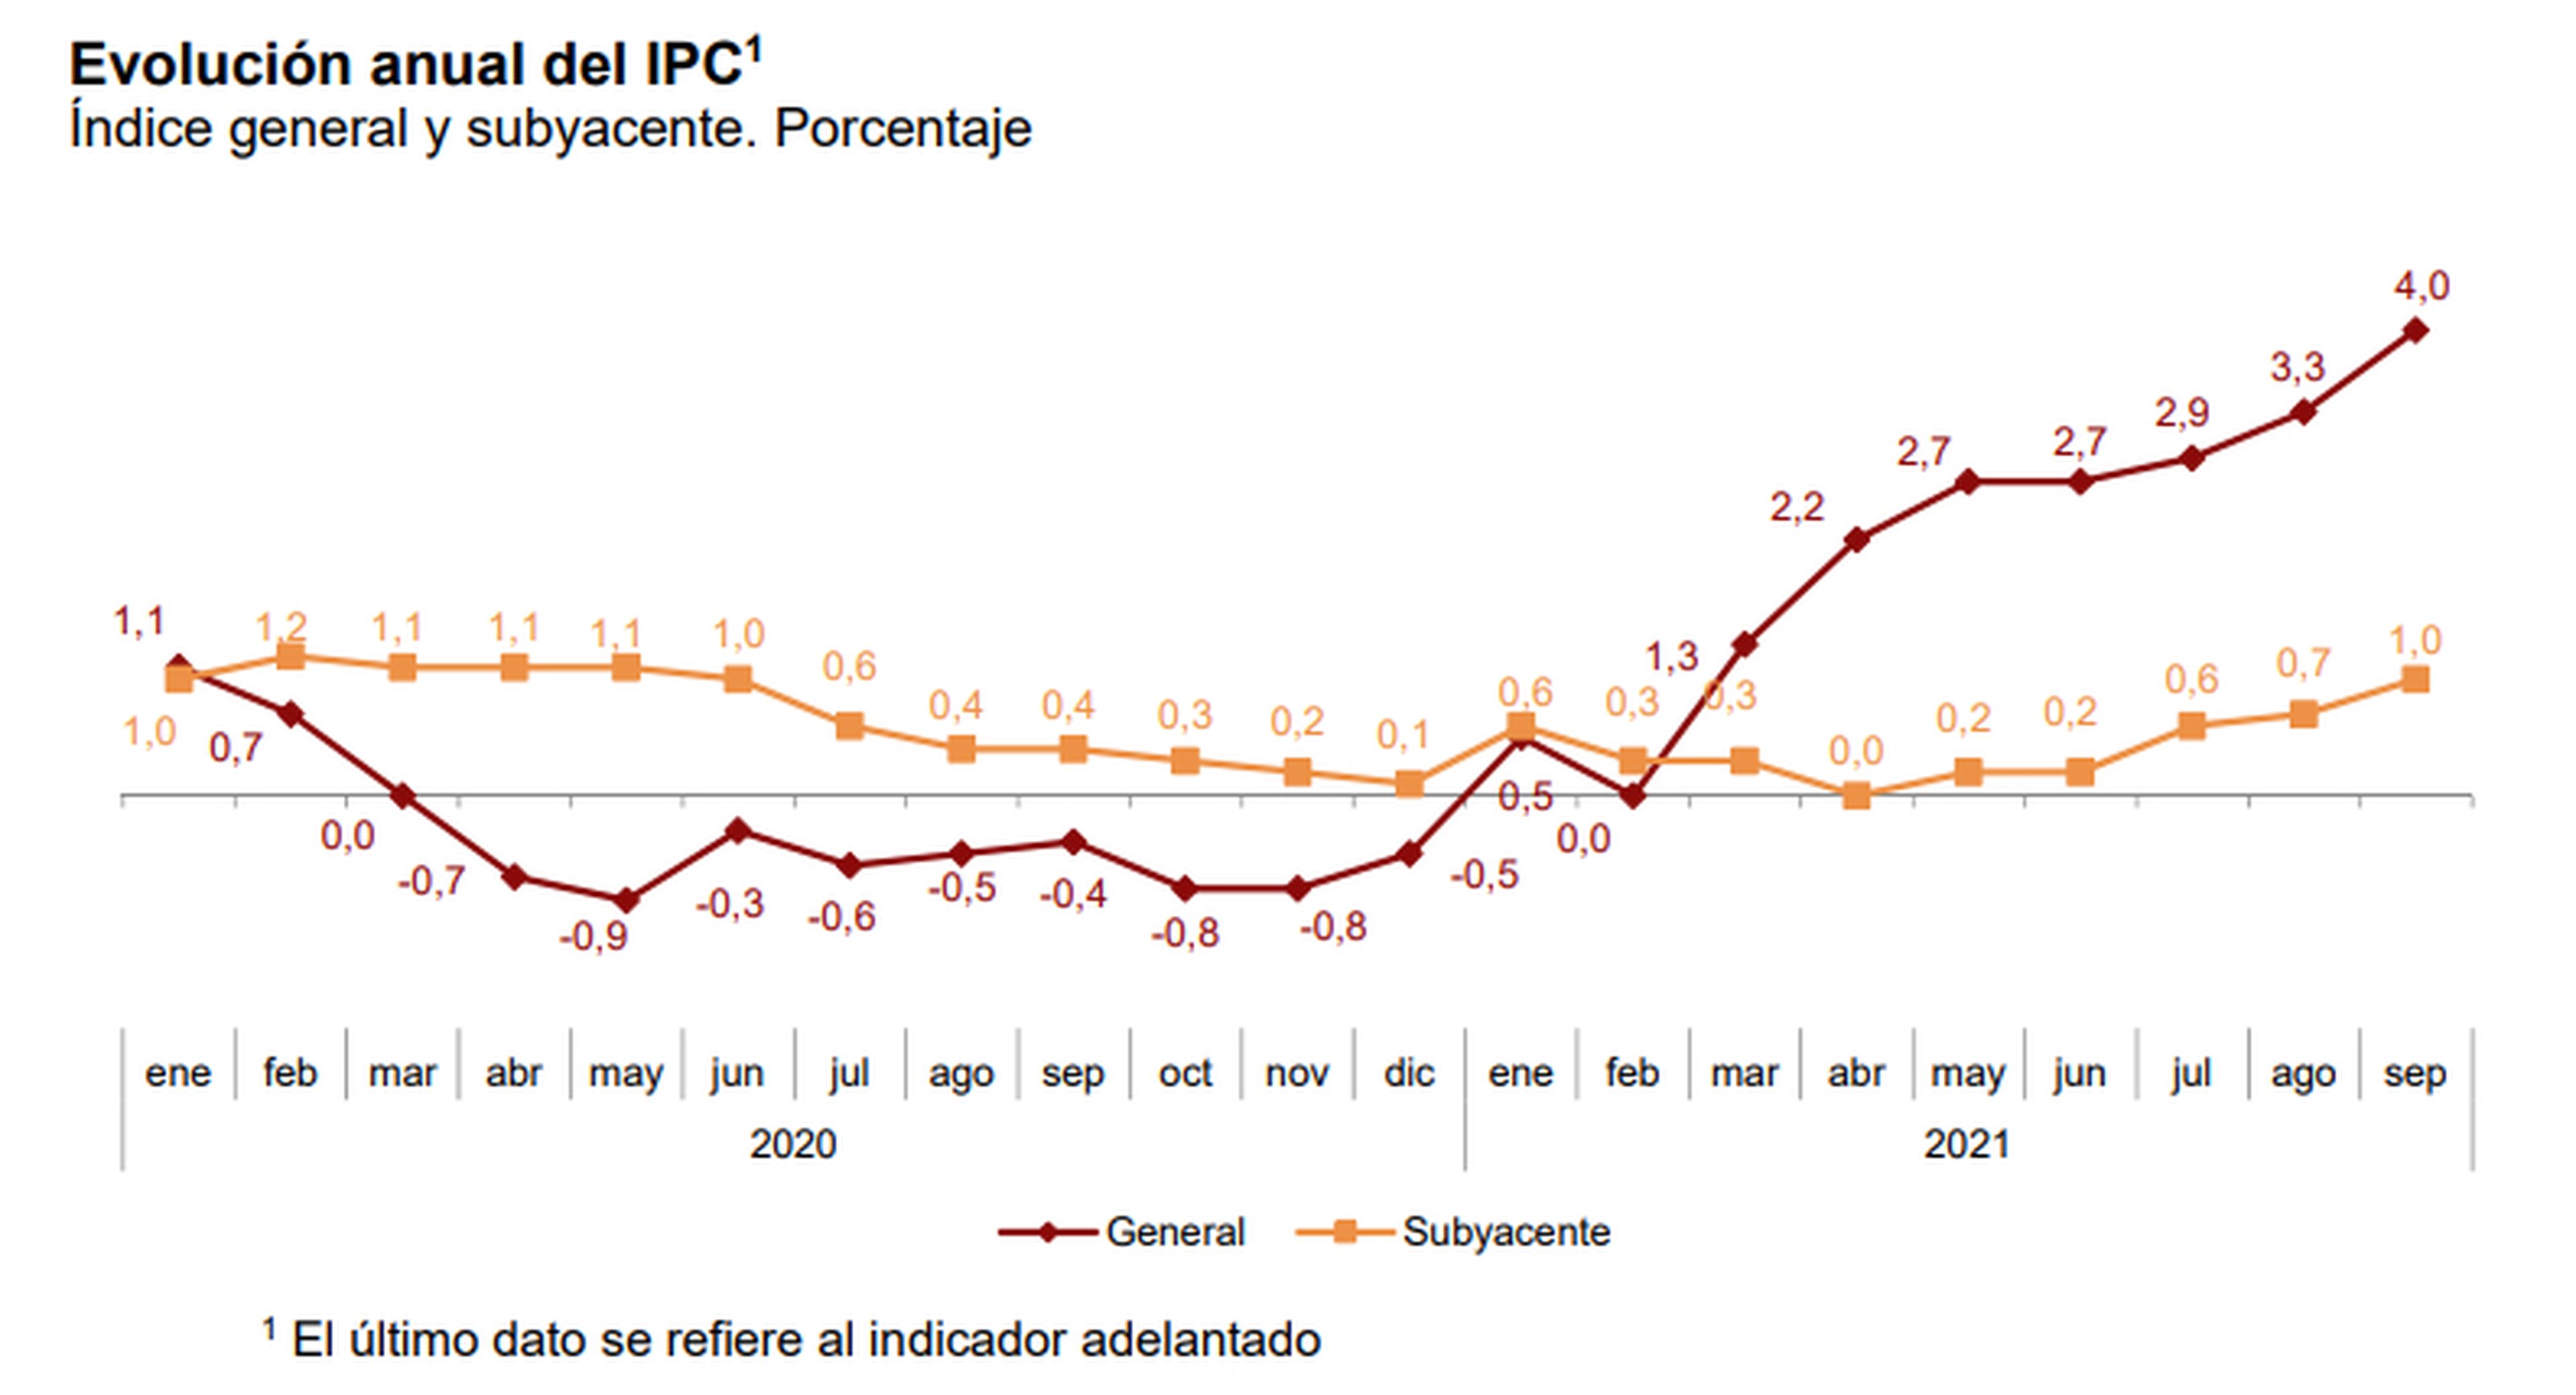 Evolución de la tasa anual del IPC general y subyacente entre enero de 2020 y septiembre de 2021